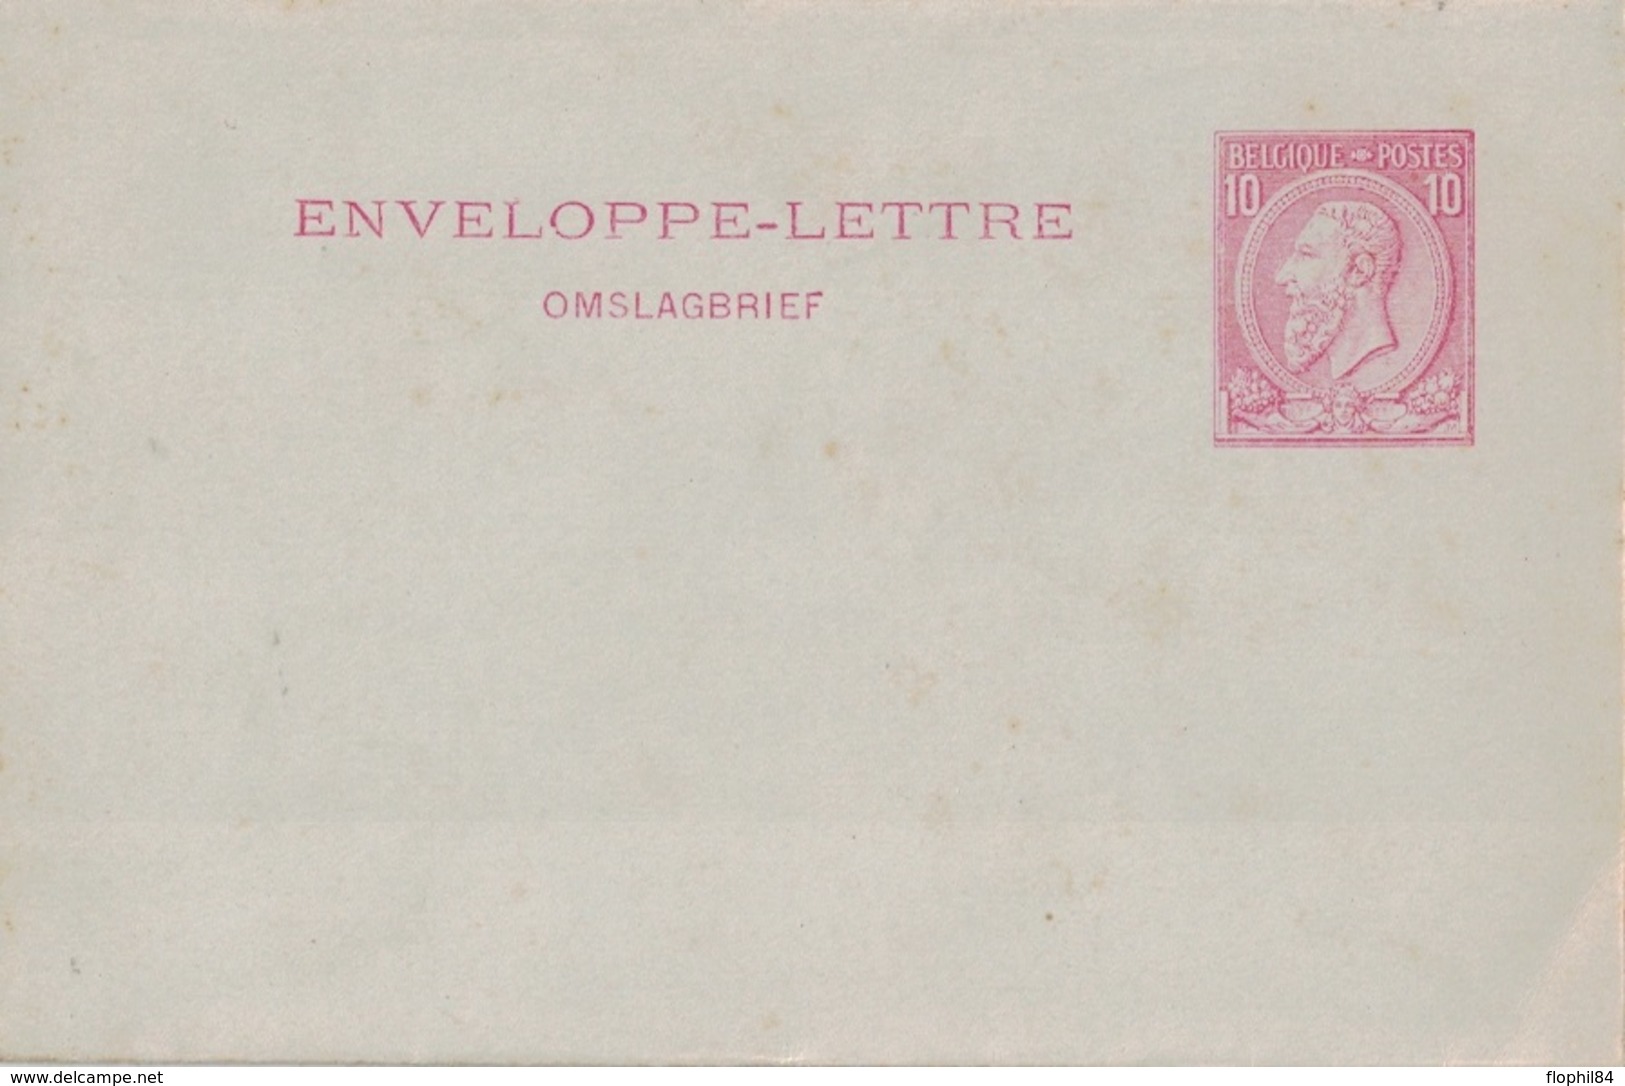 BELGIQUE - ENVELOPPE LETTRE - 10c ROUGE. - Enveloppes-lettres